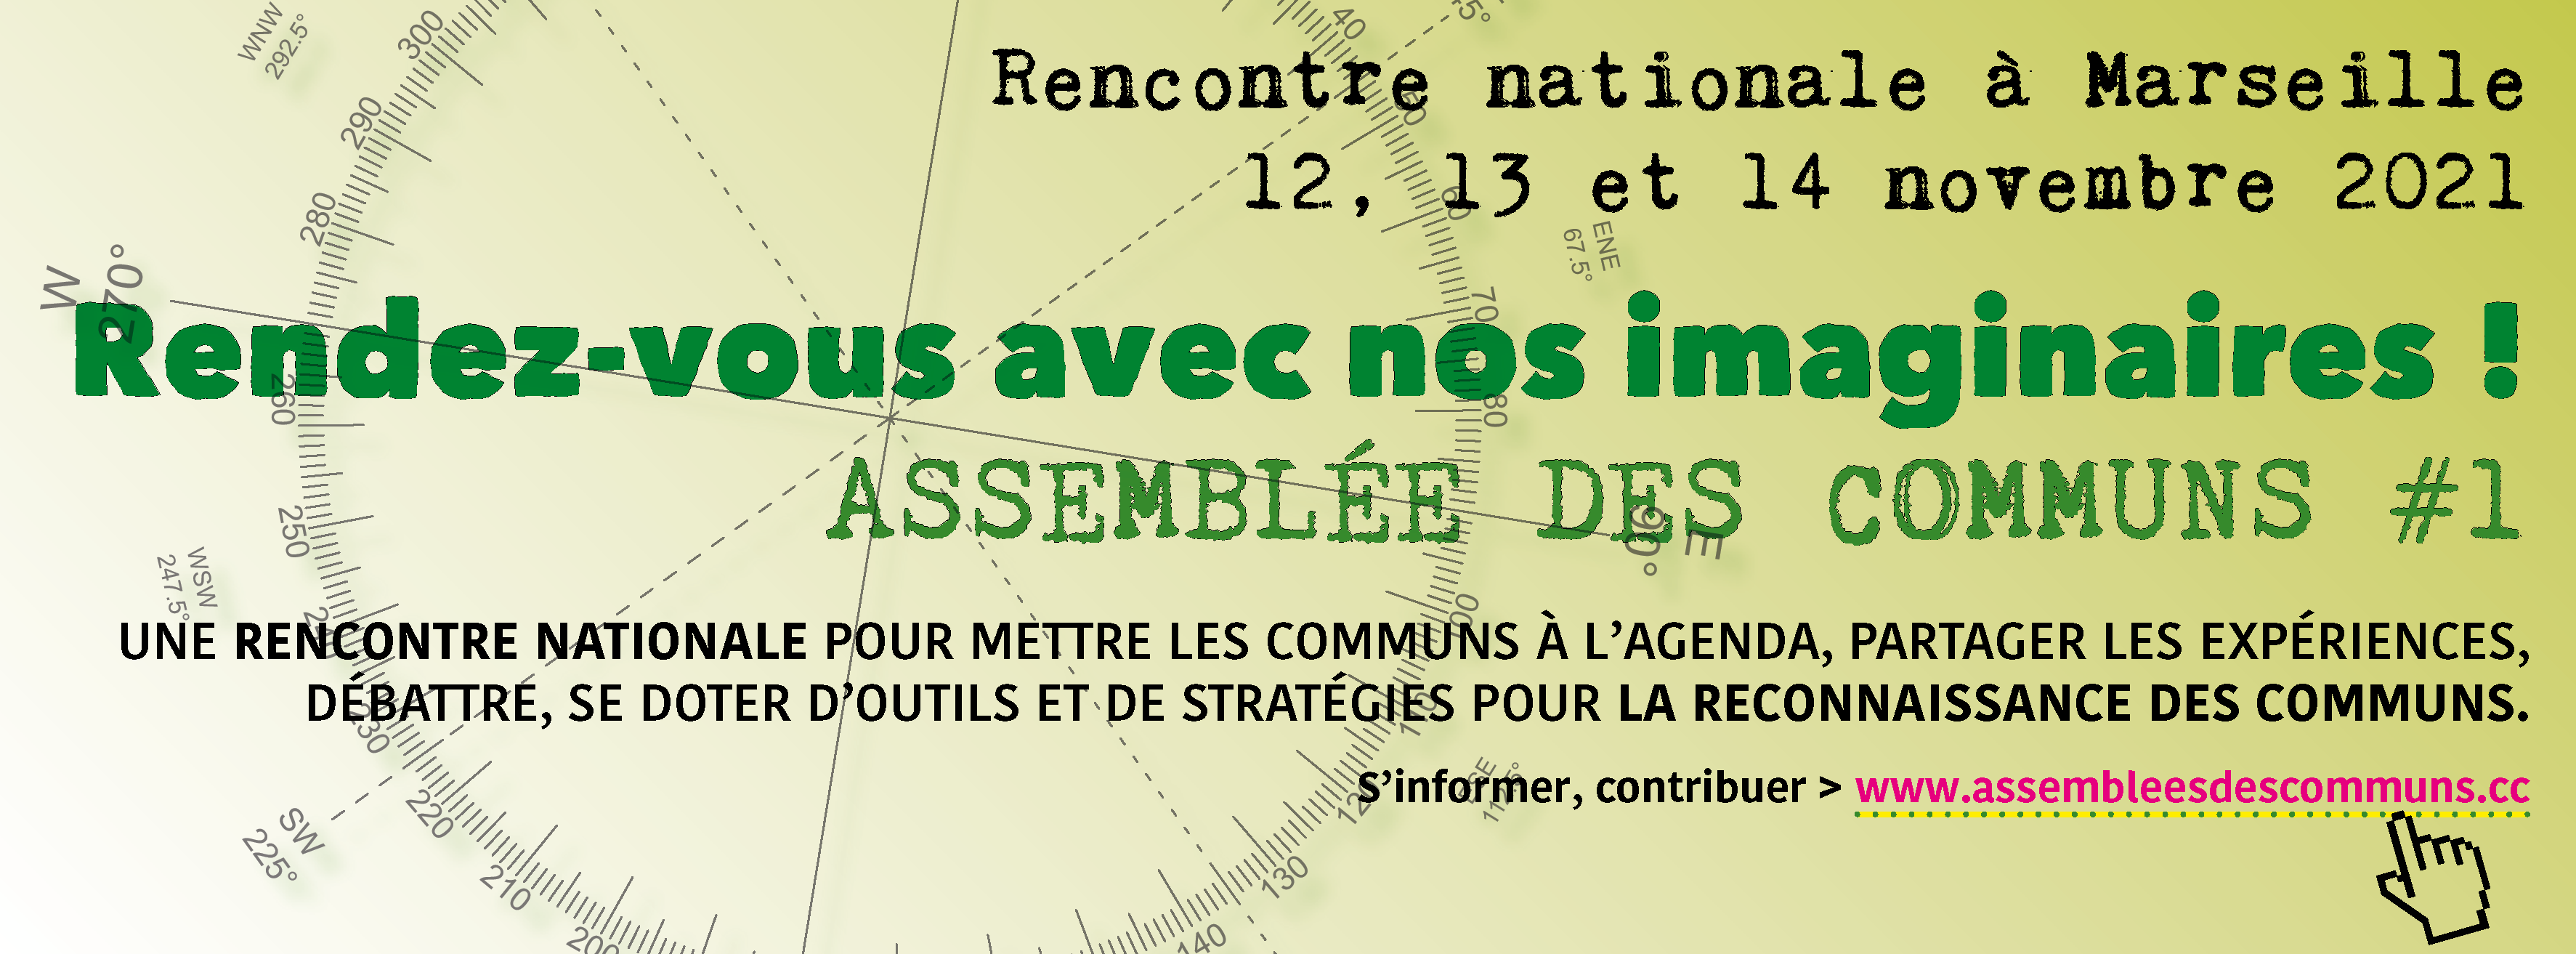 Assemblée des communs – Rendez-vous avec nos imaginaires – Marseille – 12 au 14 novembre 2021